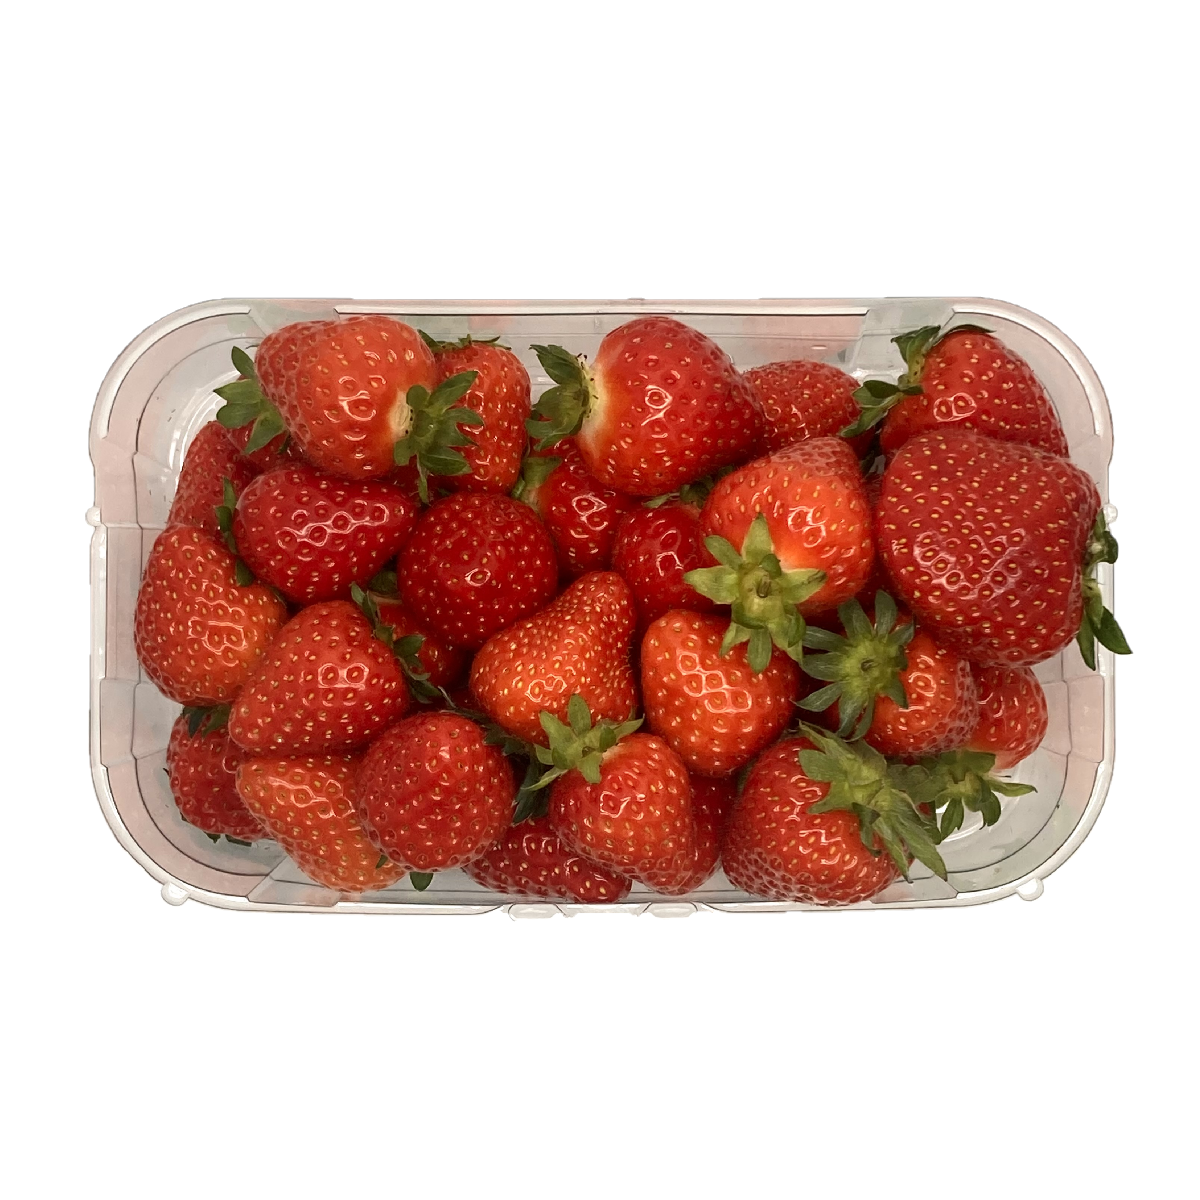 Kilkenny Strawberries 500g